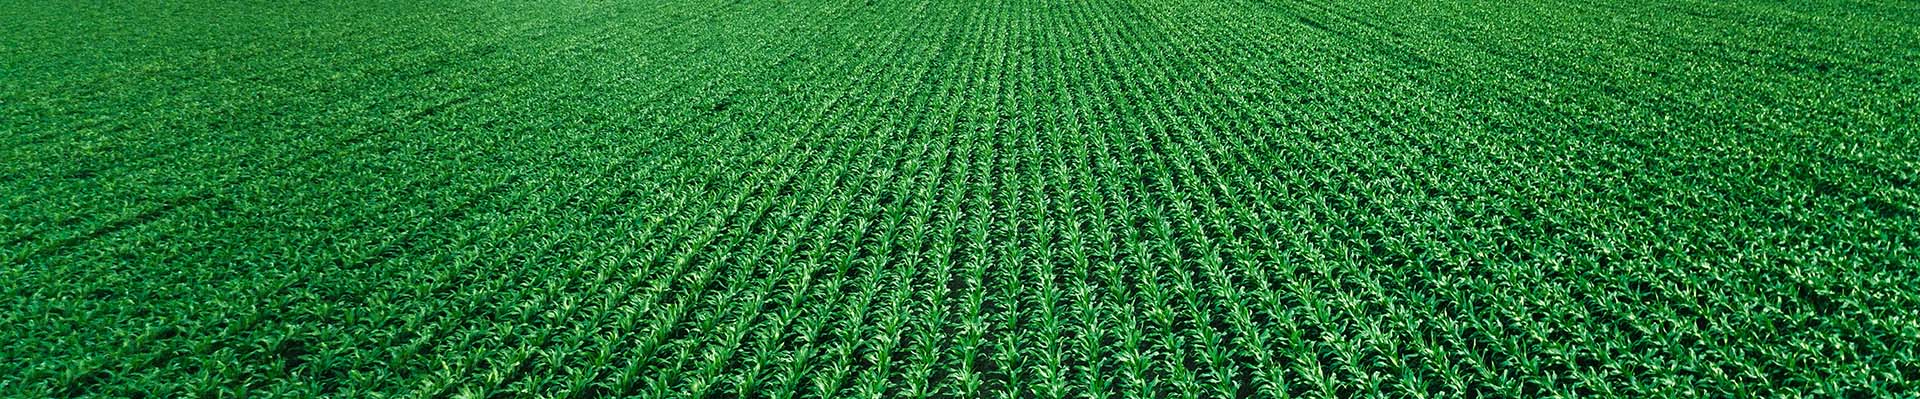 Pole zielonej kukurydzy